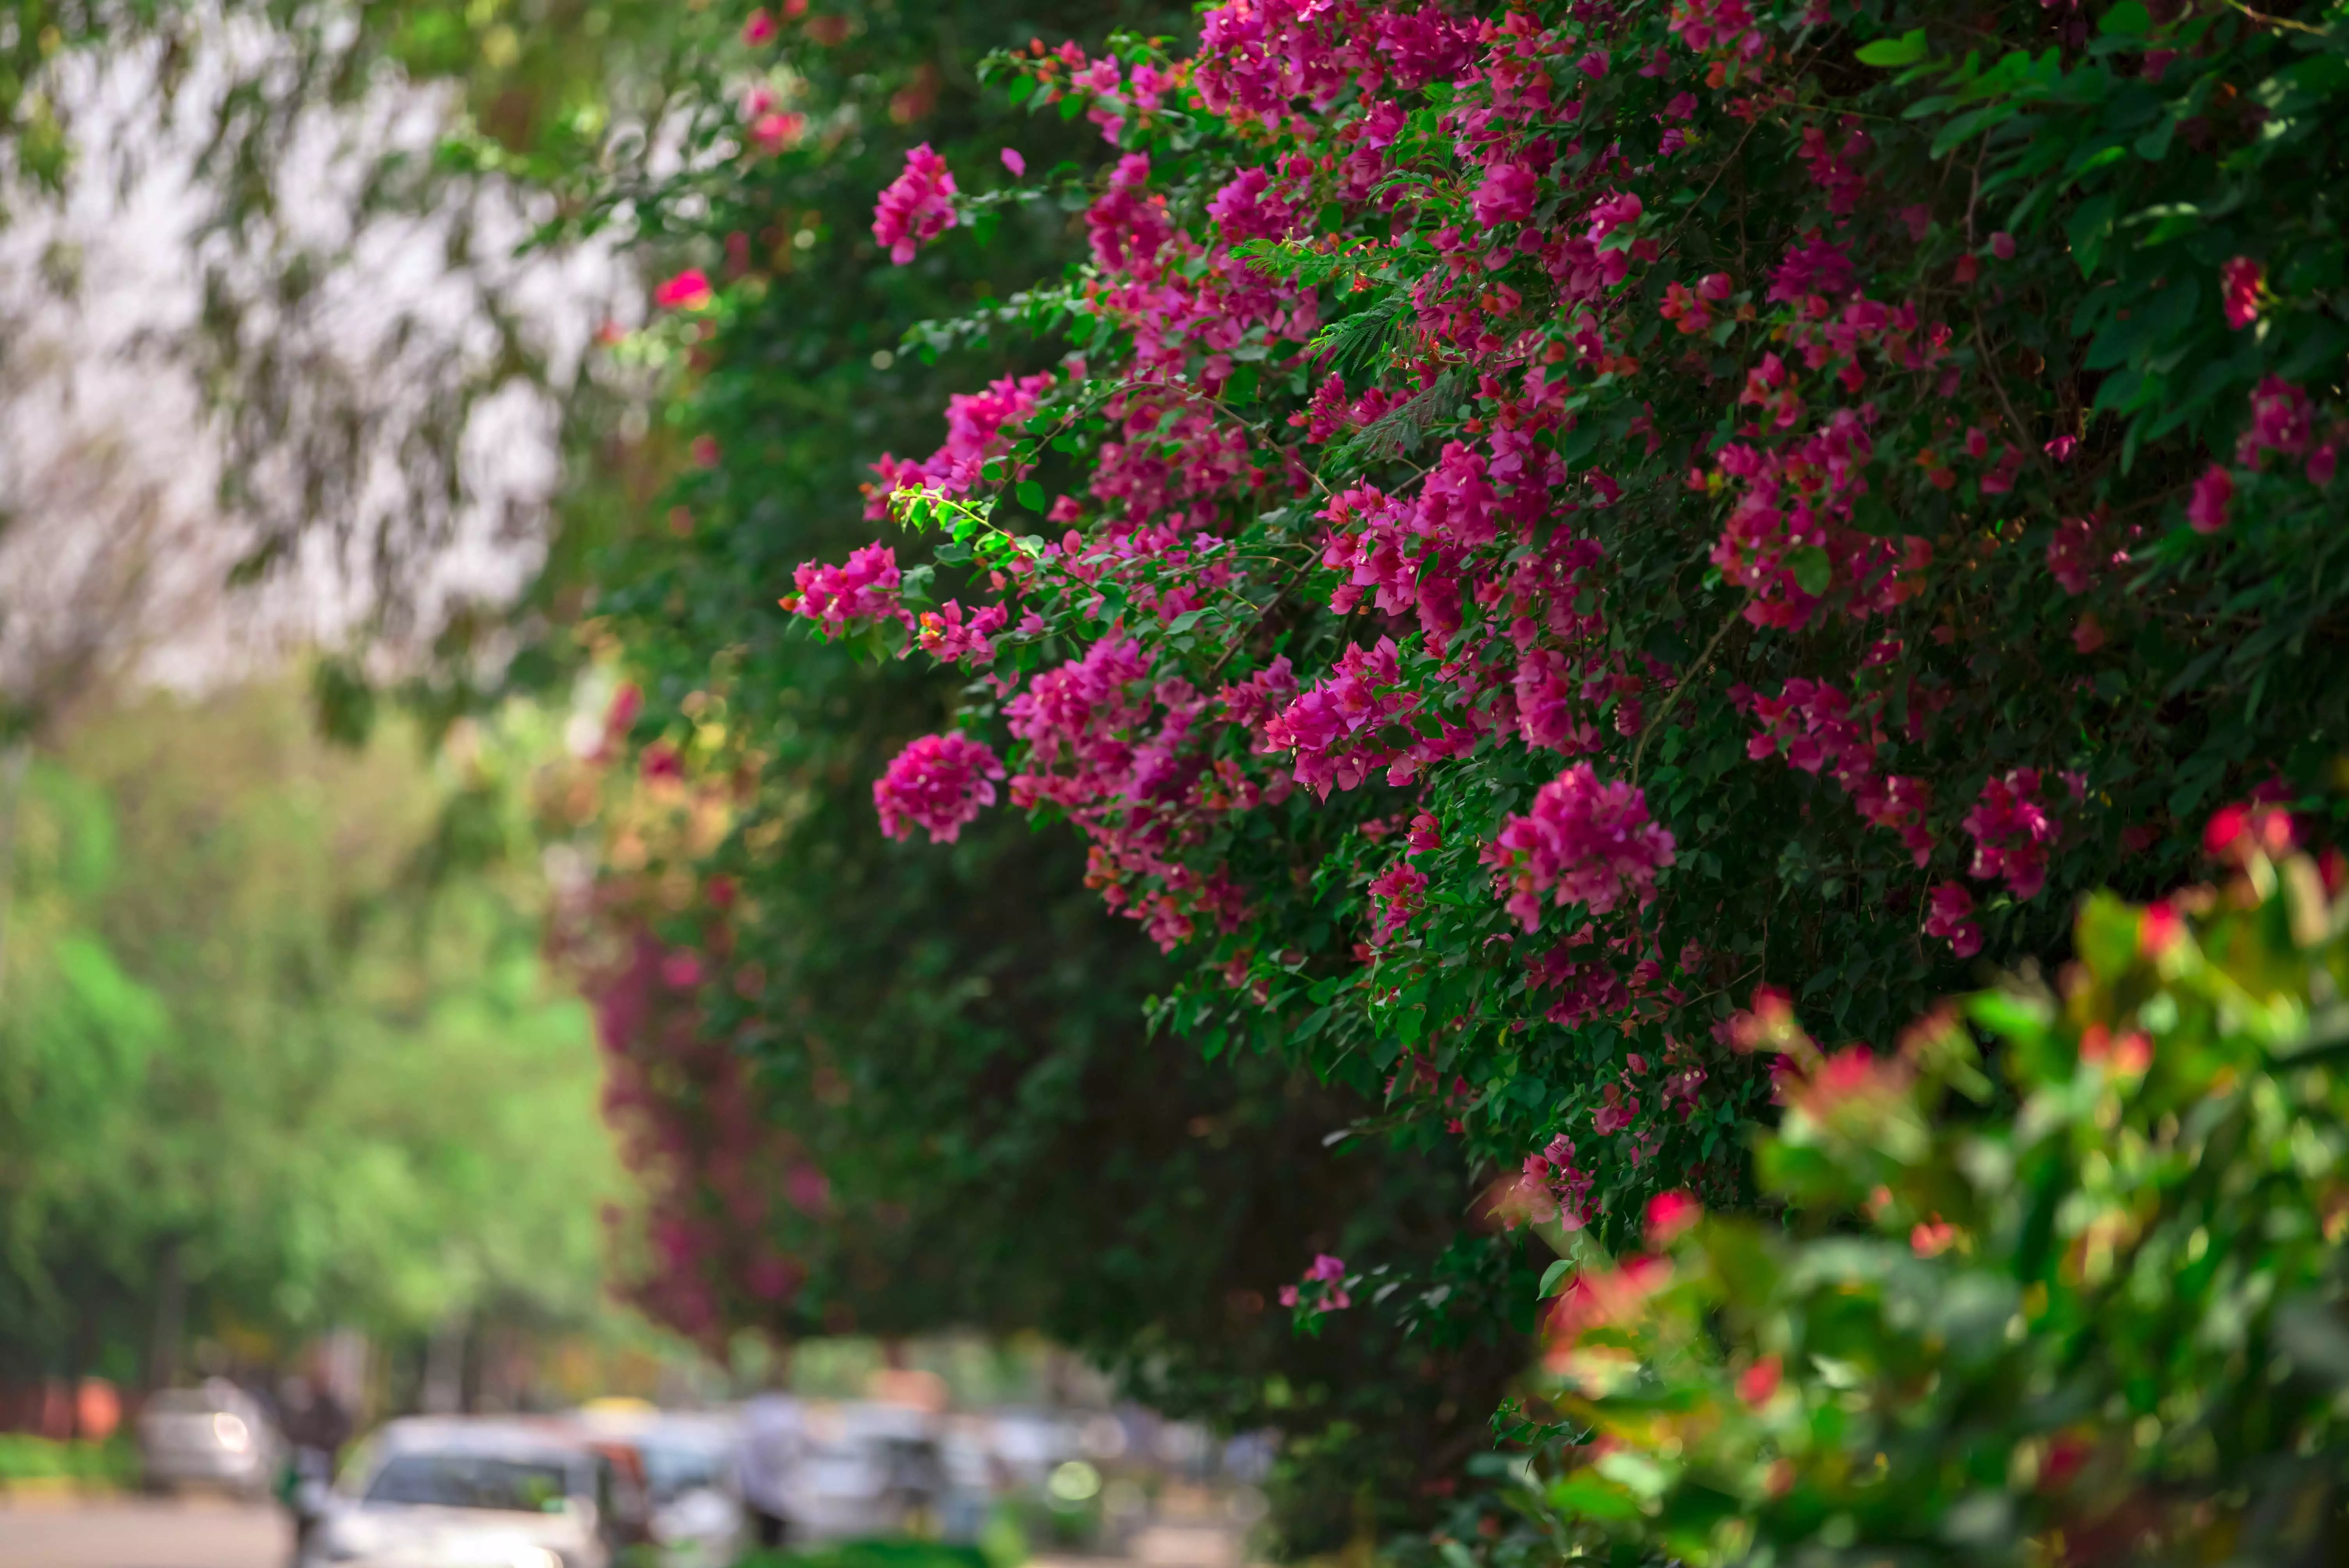 Delhi&#39;s walkways look bright with bougainvilleas in full bloom